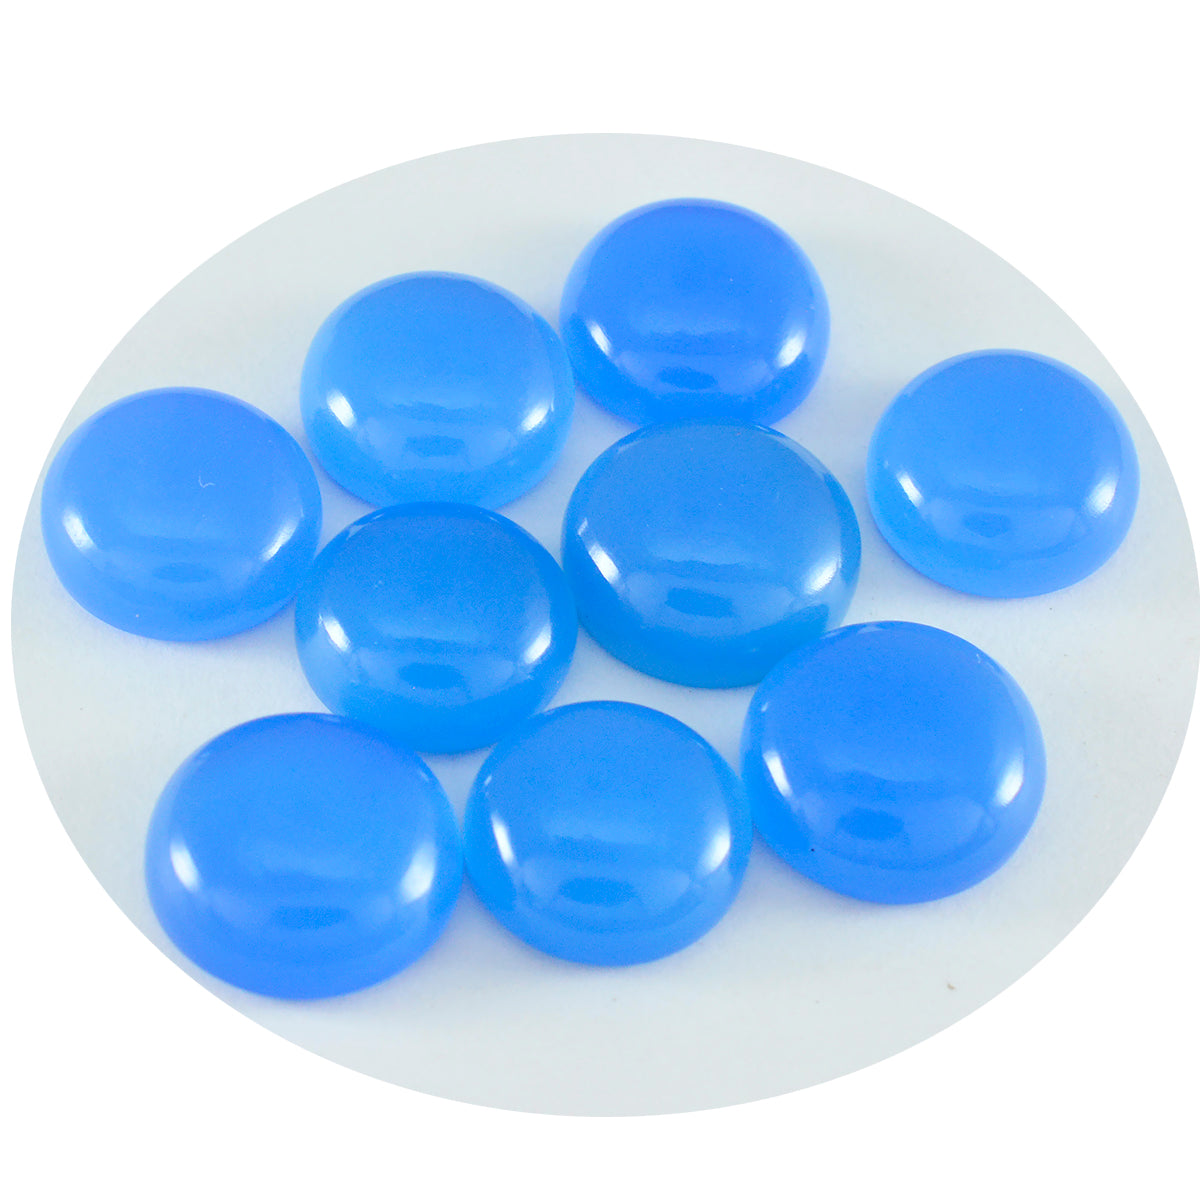 Riyogems 1 cabujón de calcedonia azul de 7x7 mm, forma redonda, piedra de buena calidad